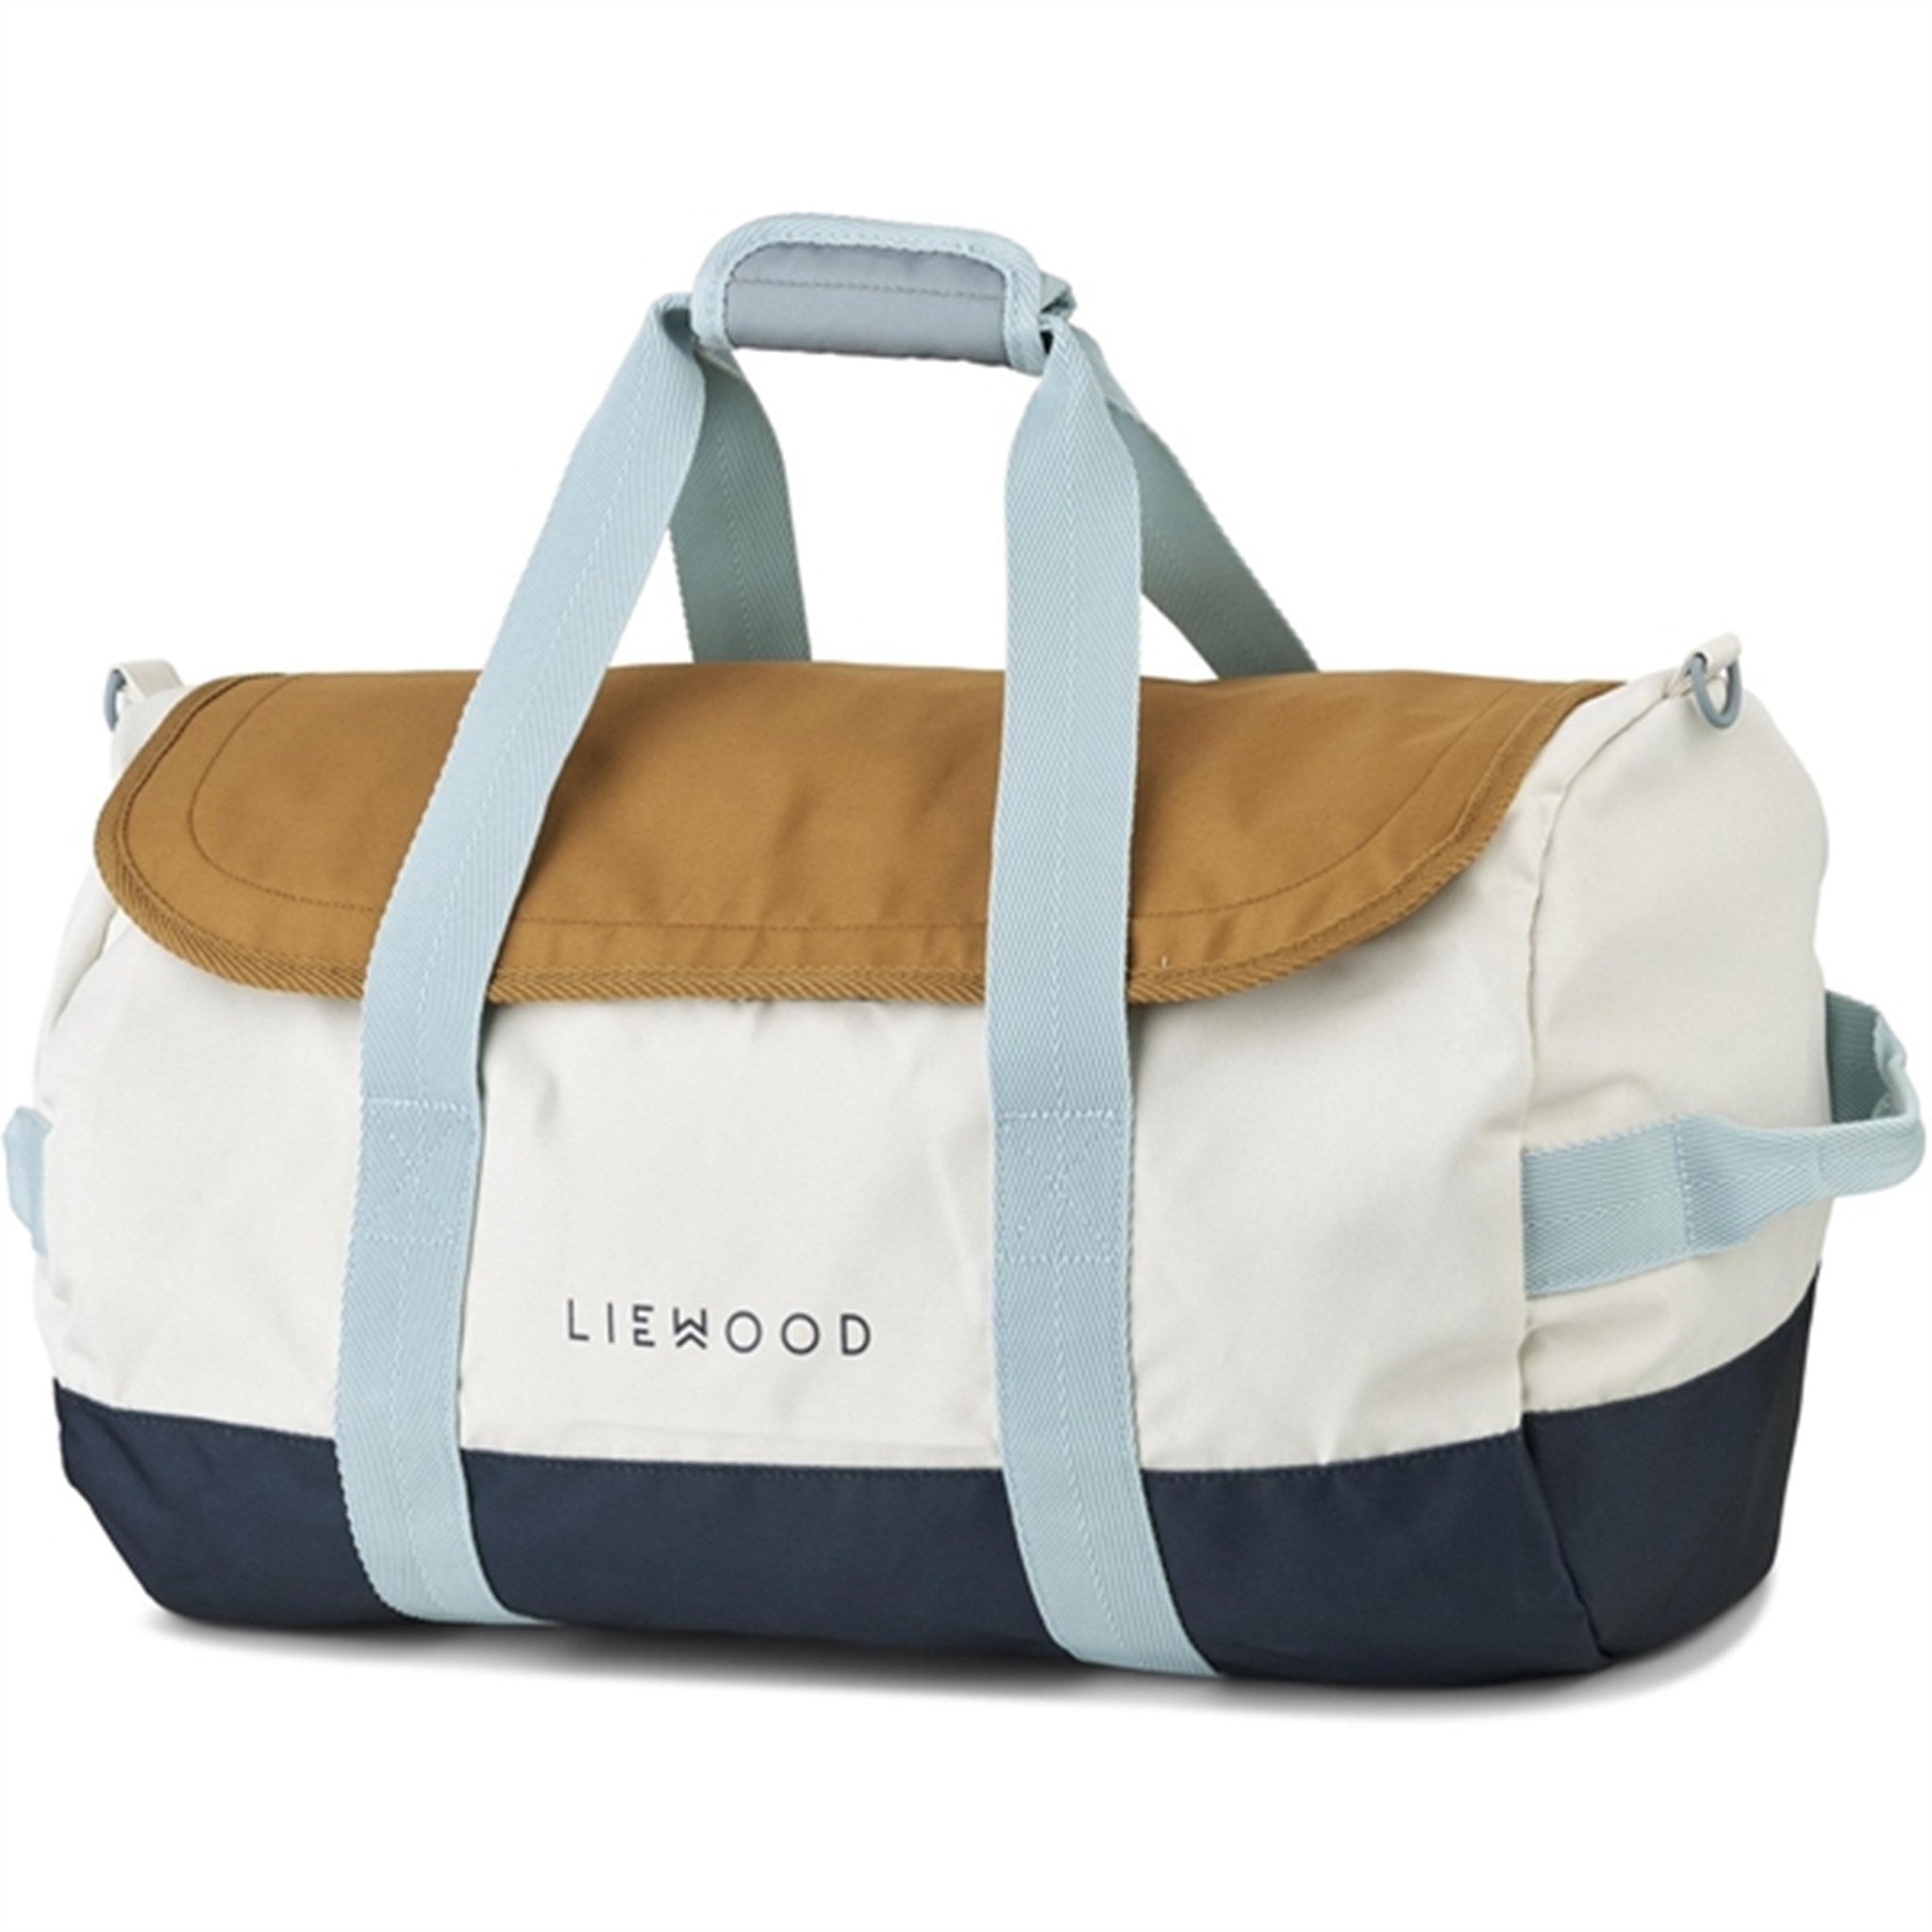 Liewood Alyssa Travel Bag Midnight Navy/Sea Blue